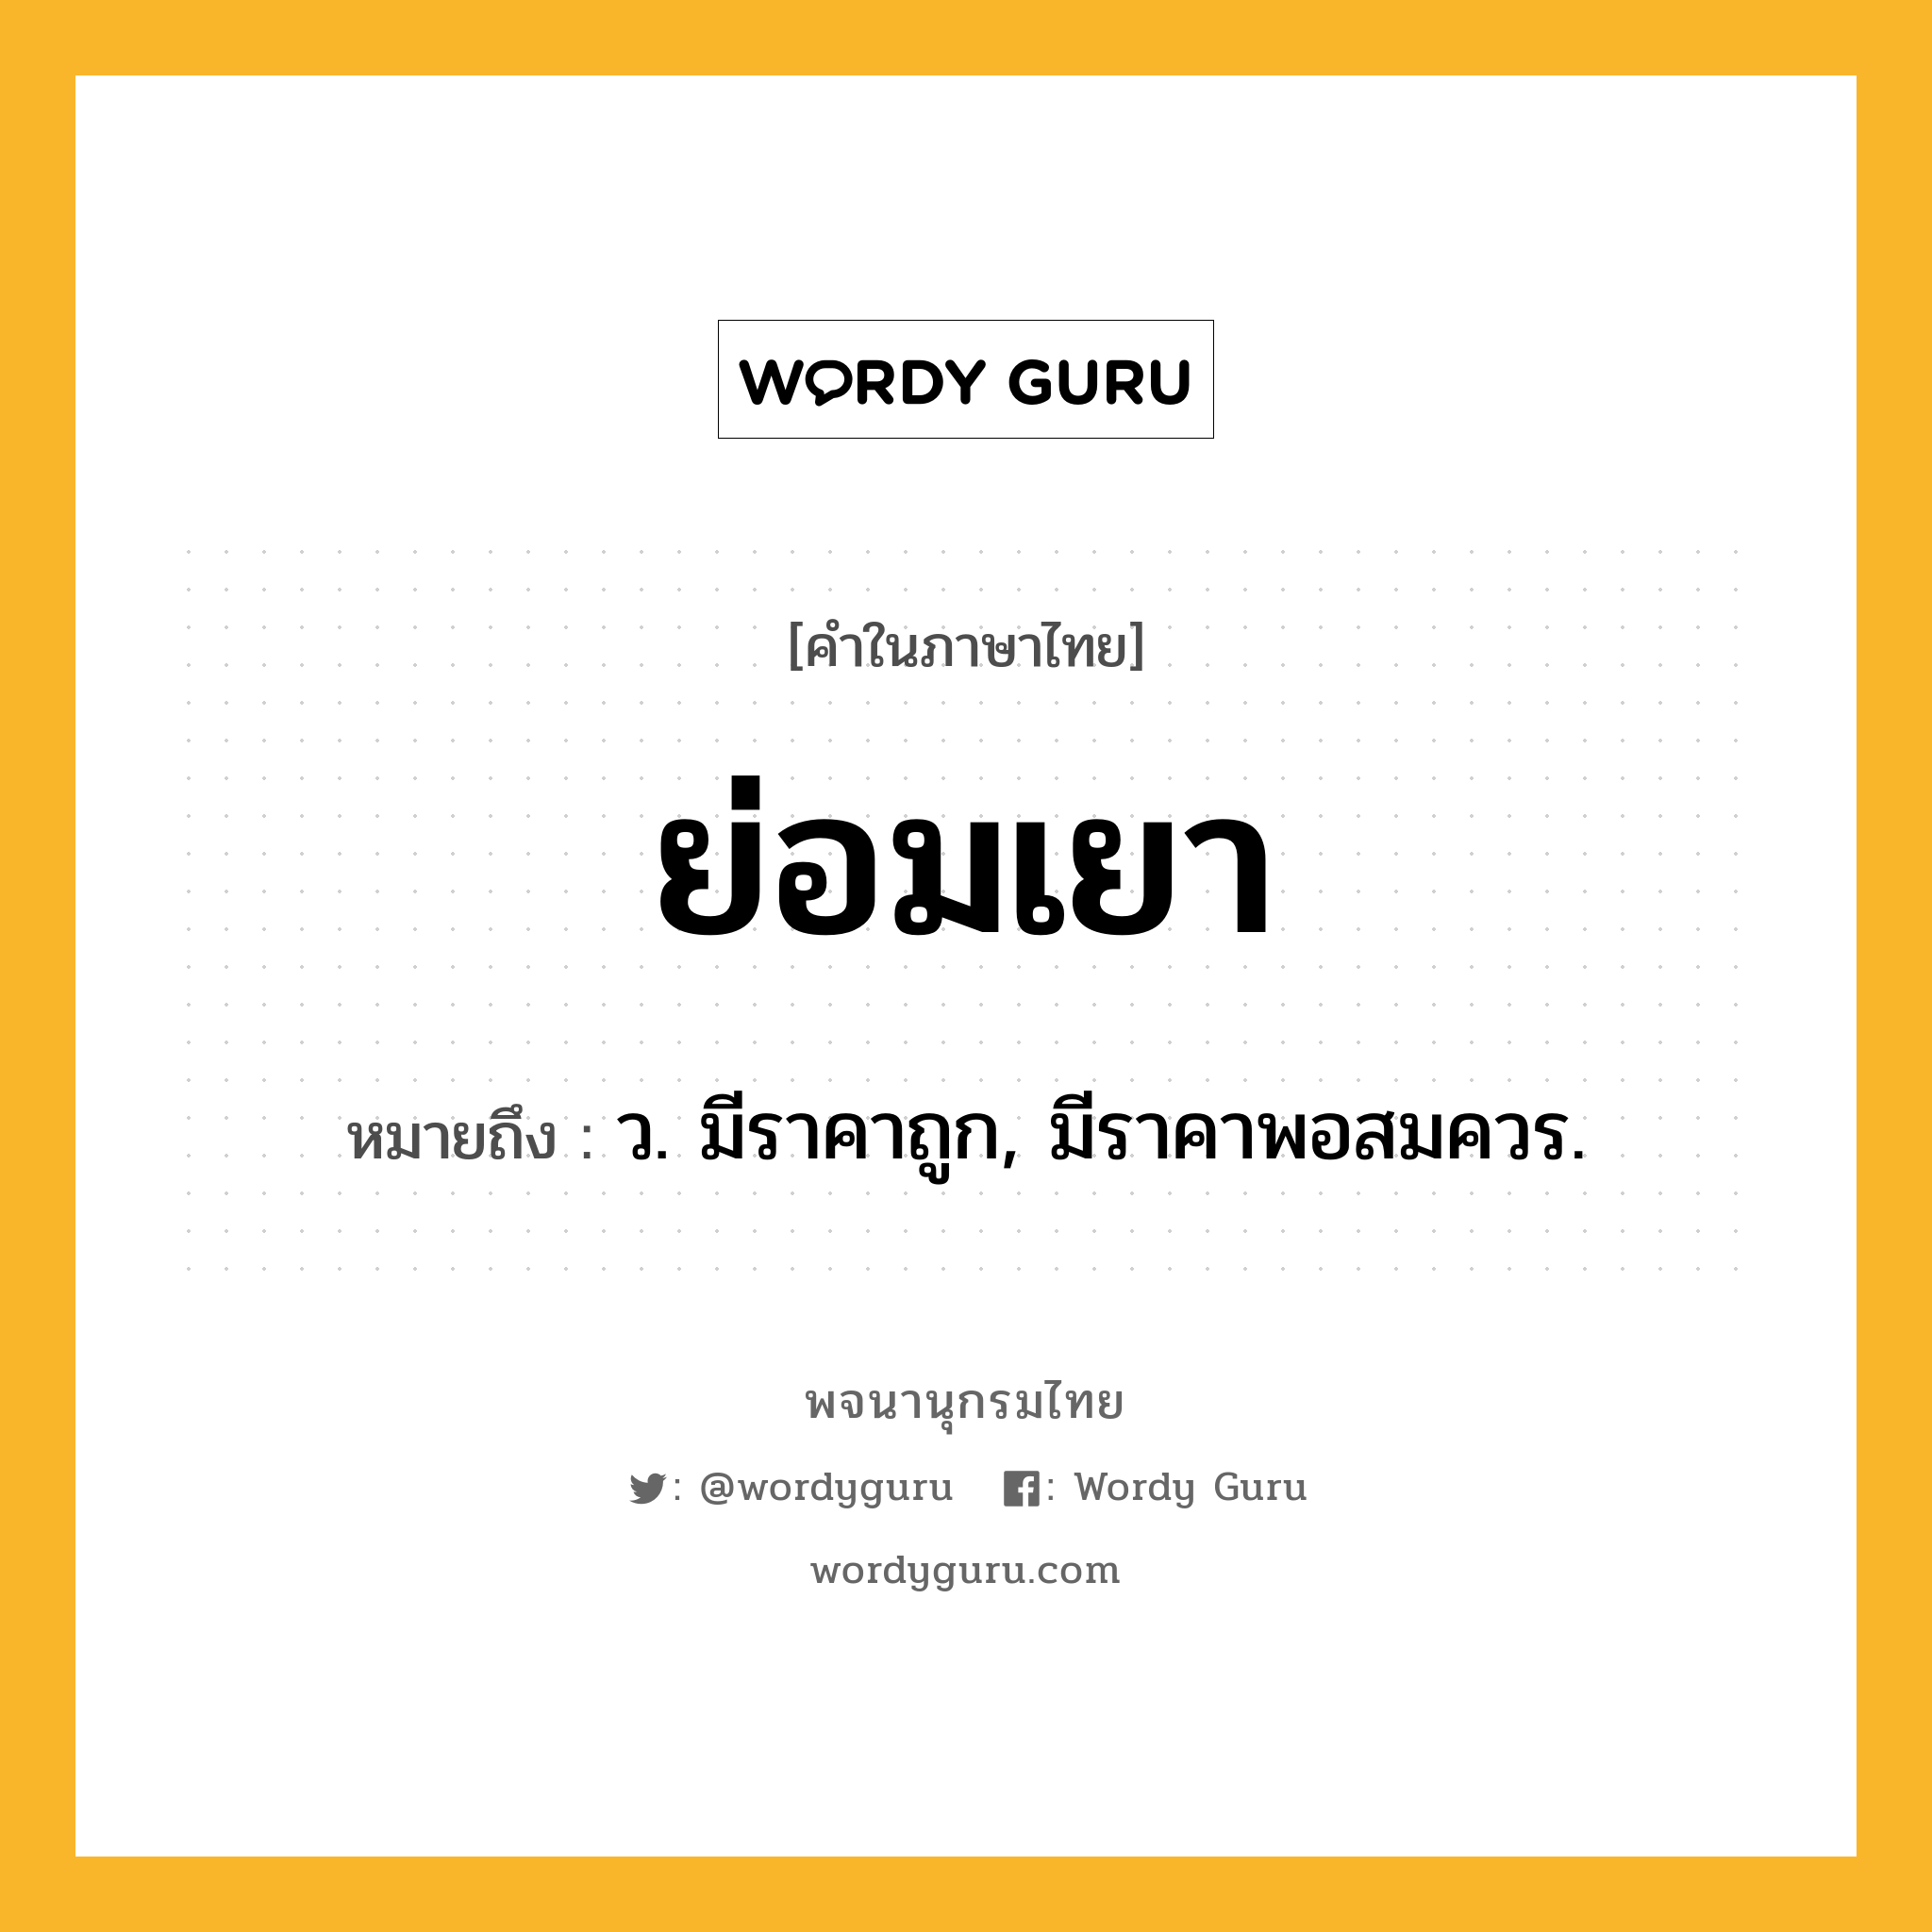 ย่อมเยา ความหมาย หมายถึงอะไร?, คำในภาษาไทย ย่อมเยา หมายถึง ว. มีราคาถูก, มีราคาพอสมควร.